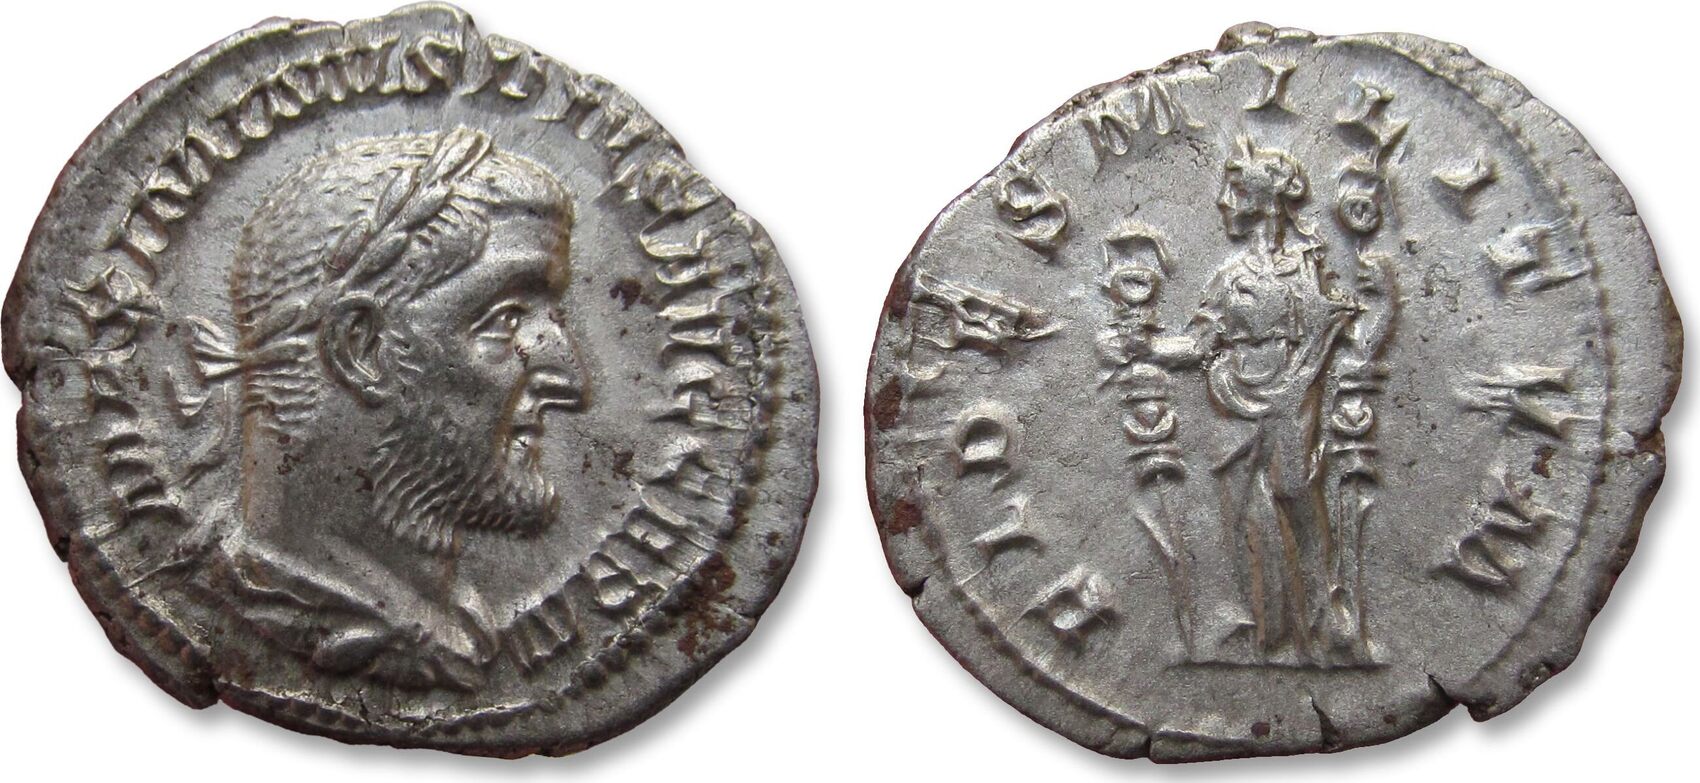 Denarius - Maximinus Thrax (FIDES MILITVM; Fides) - Roman Empire